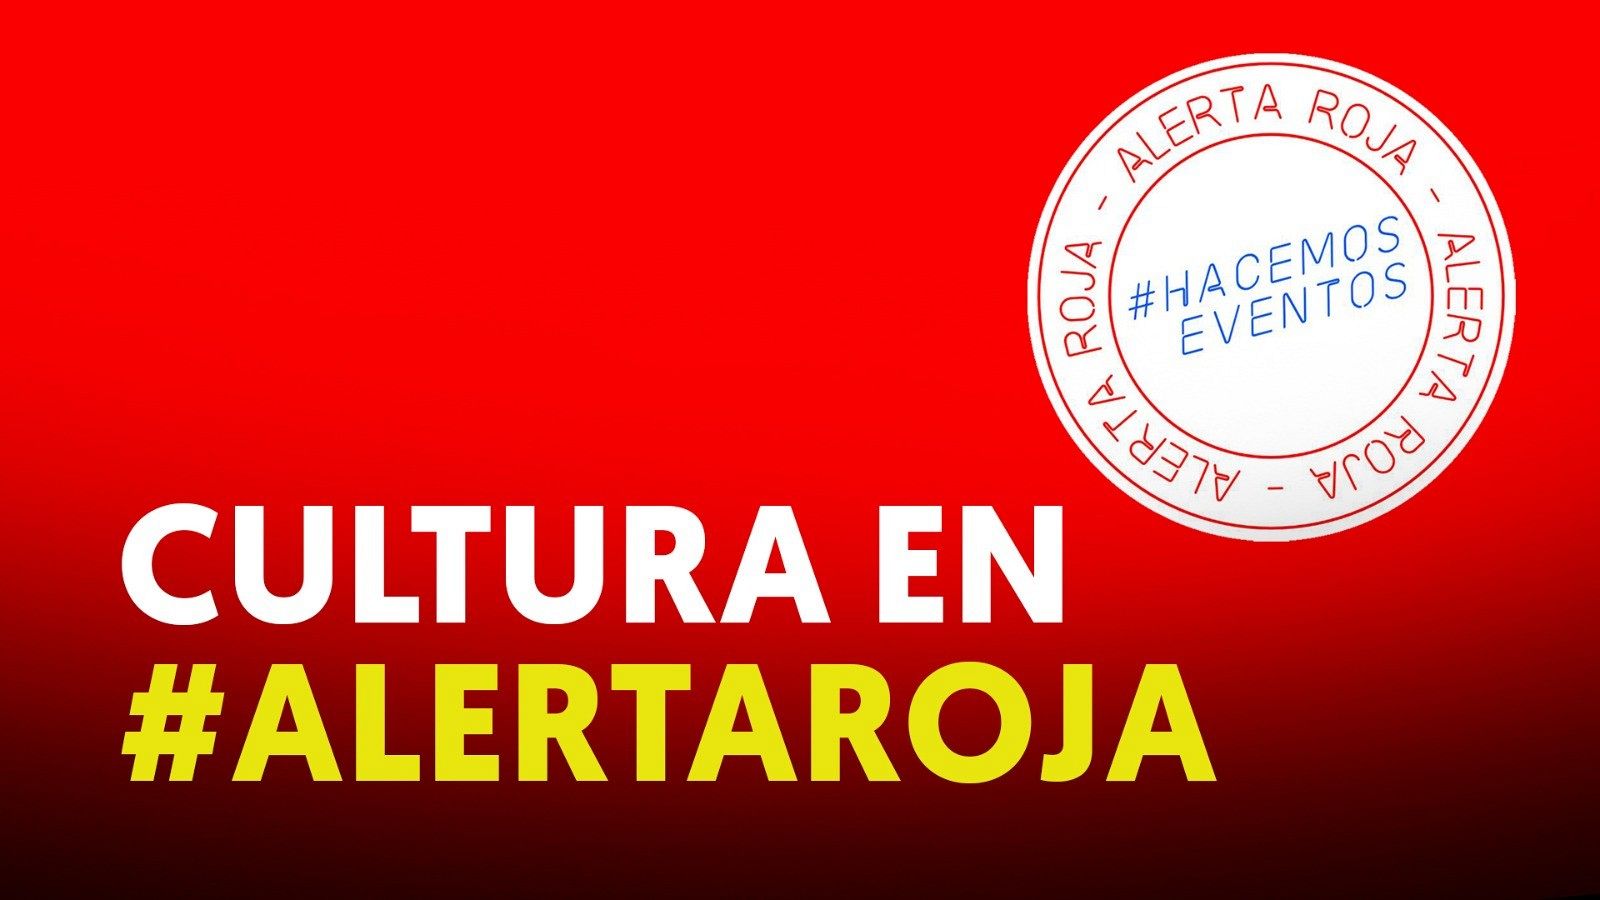 Alerta Roja en toda España, en protesta por el colapso de eventos culturales